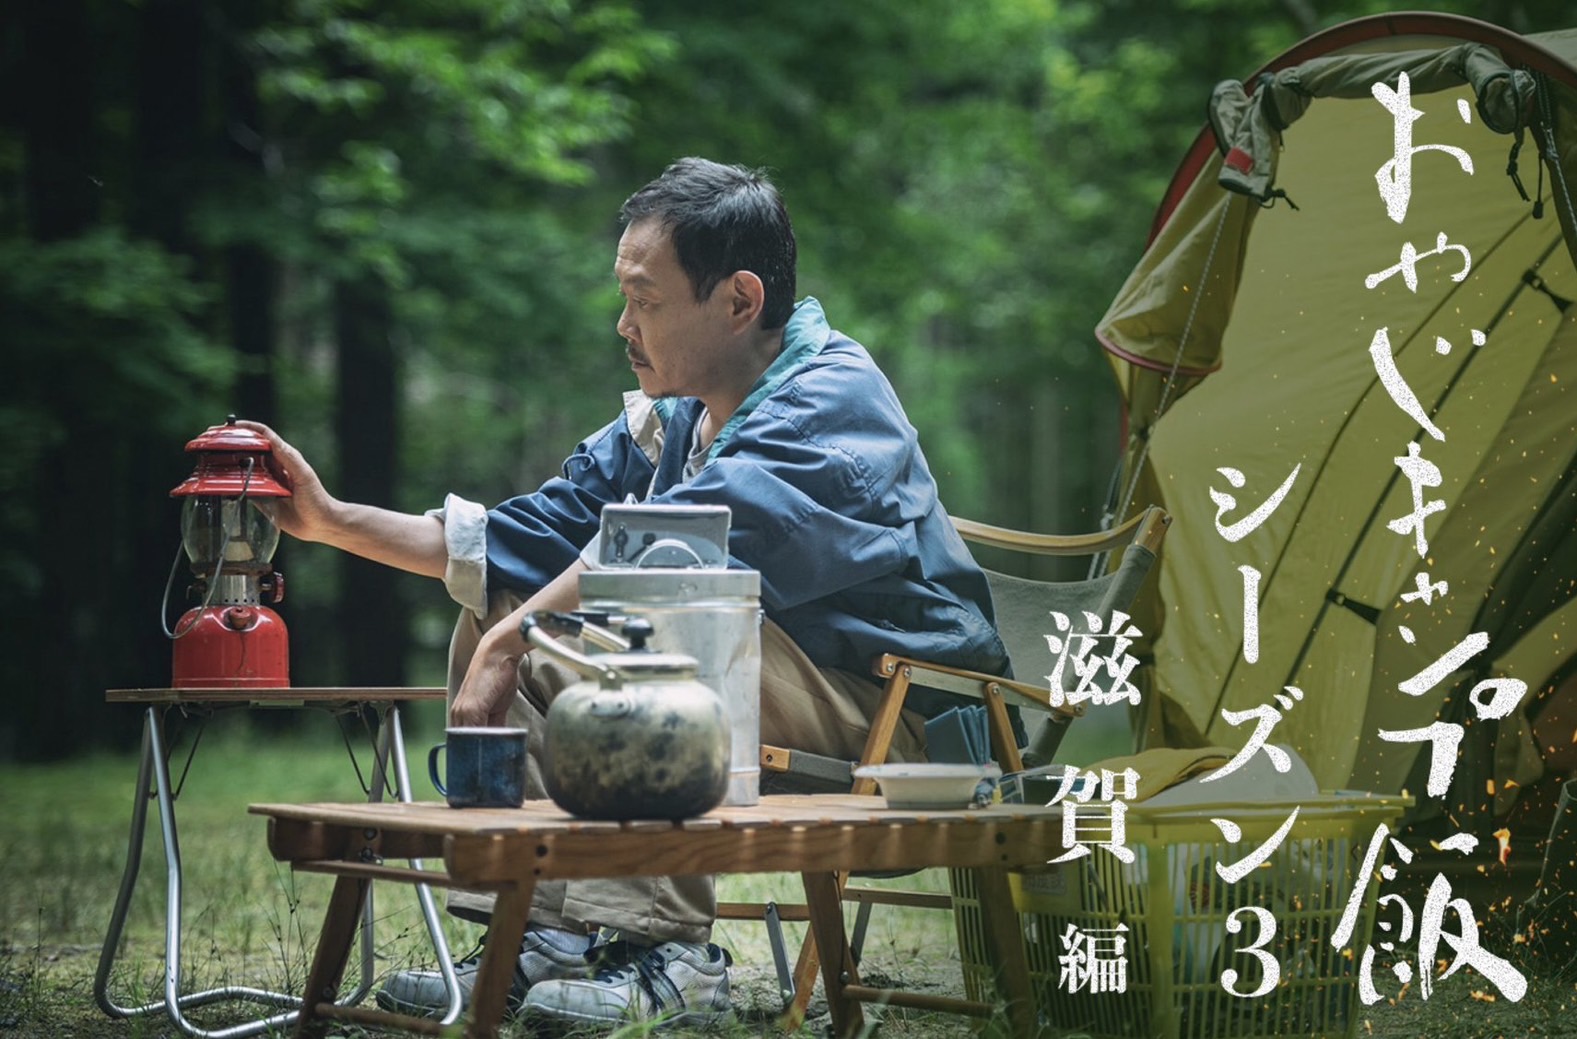 YouTubeドラマ「おやじキャンプ飯シーズン3〜滋賀編〜」の主題歌を担当することになりました